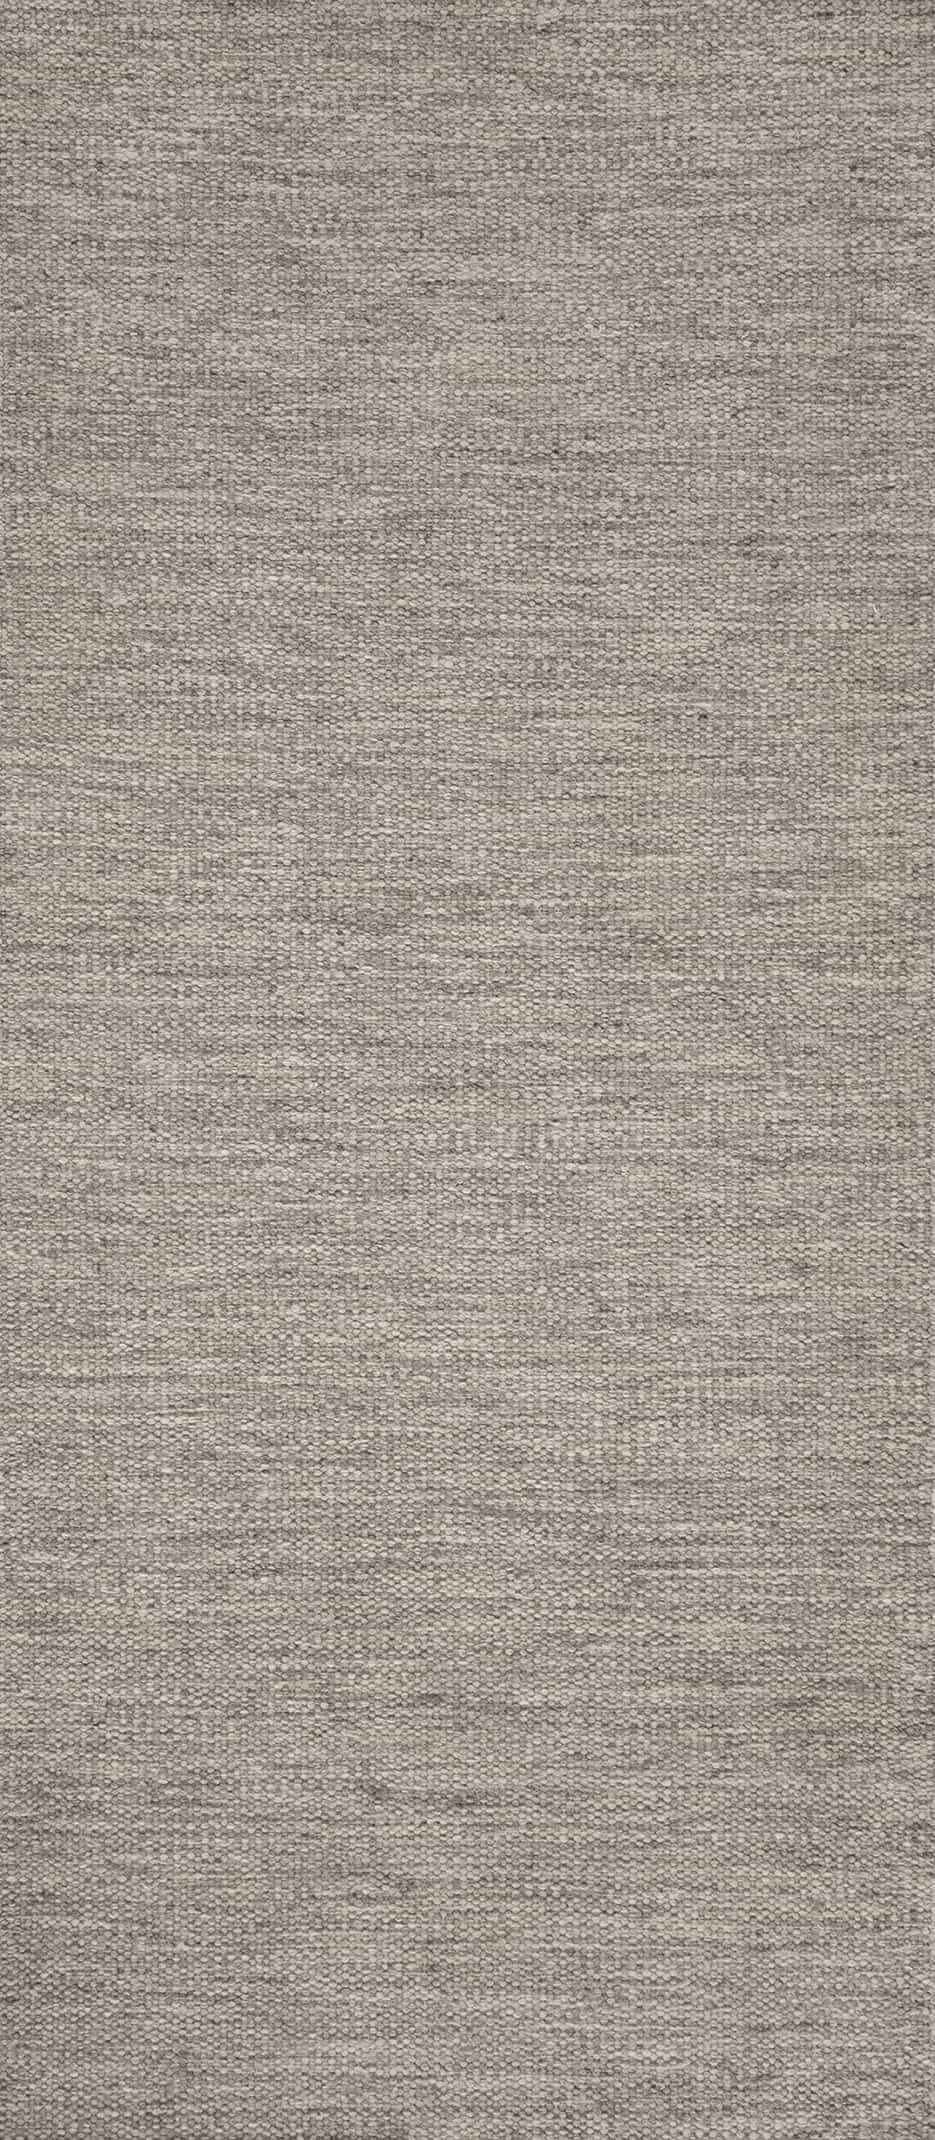 Textures 1 Grey Flat Weave Rug